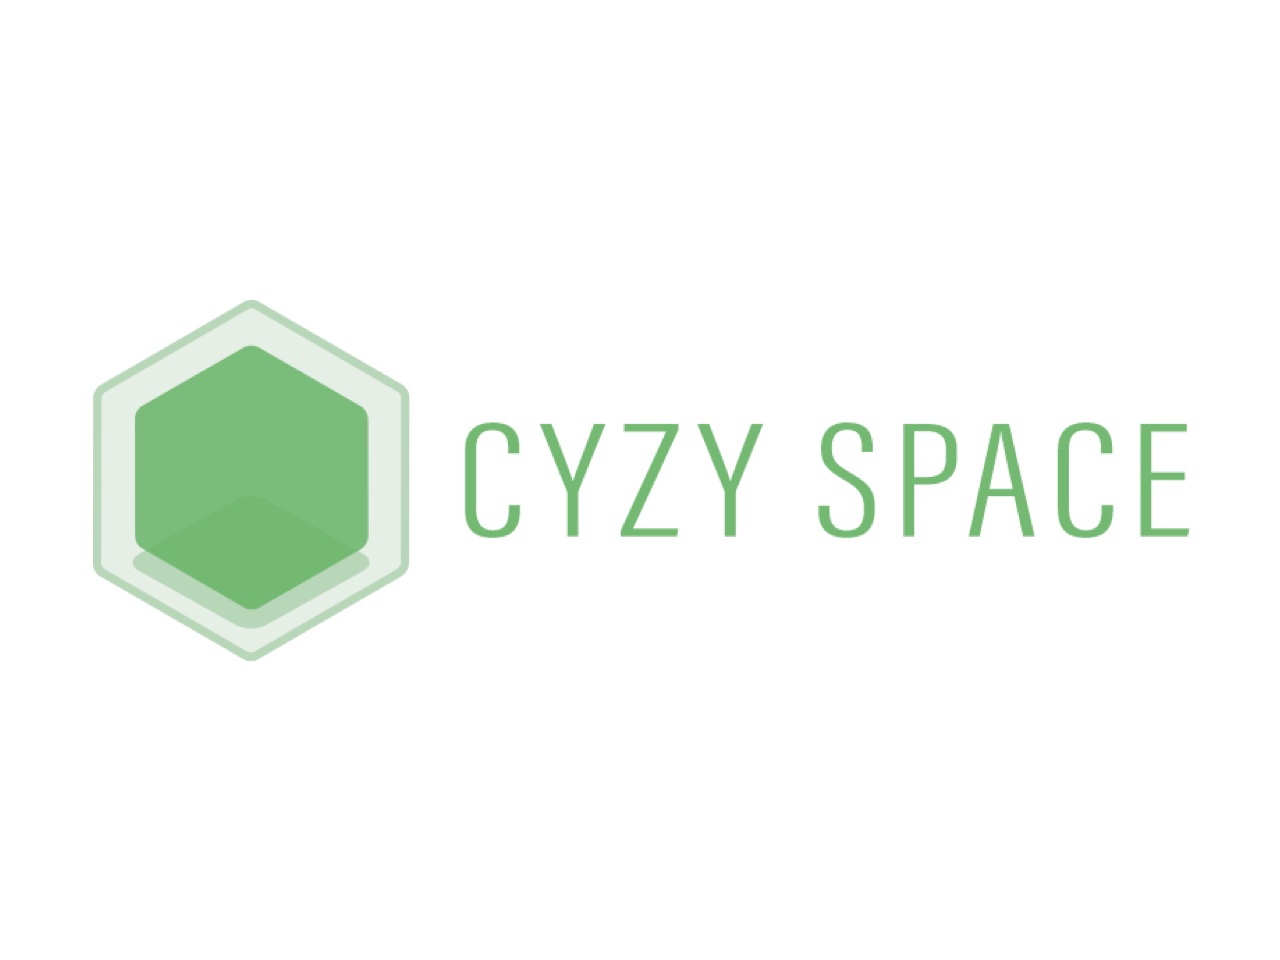 バーチャル展示会・イベント・VRショールームのメタバース・サービス「CYZY SPACE」は、Web上からVR空間を手軽に利用できるサービスだ。